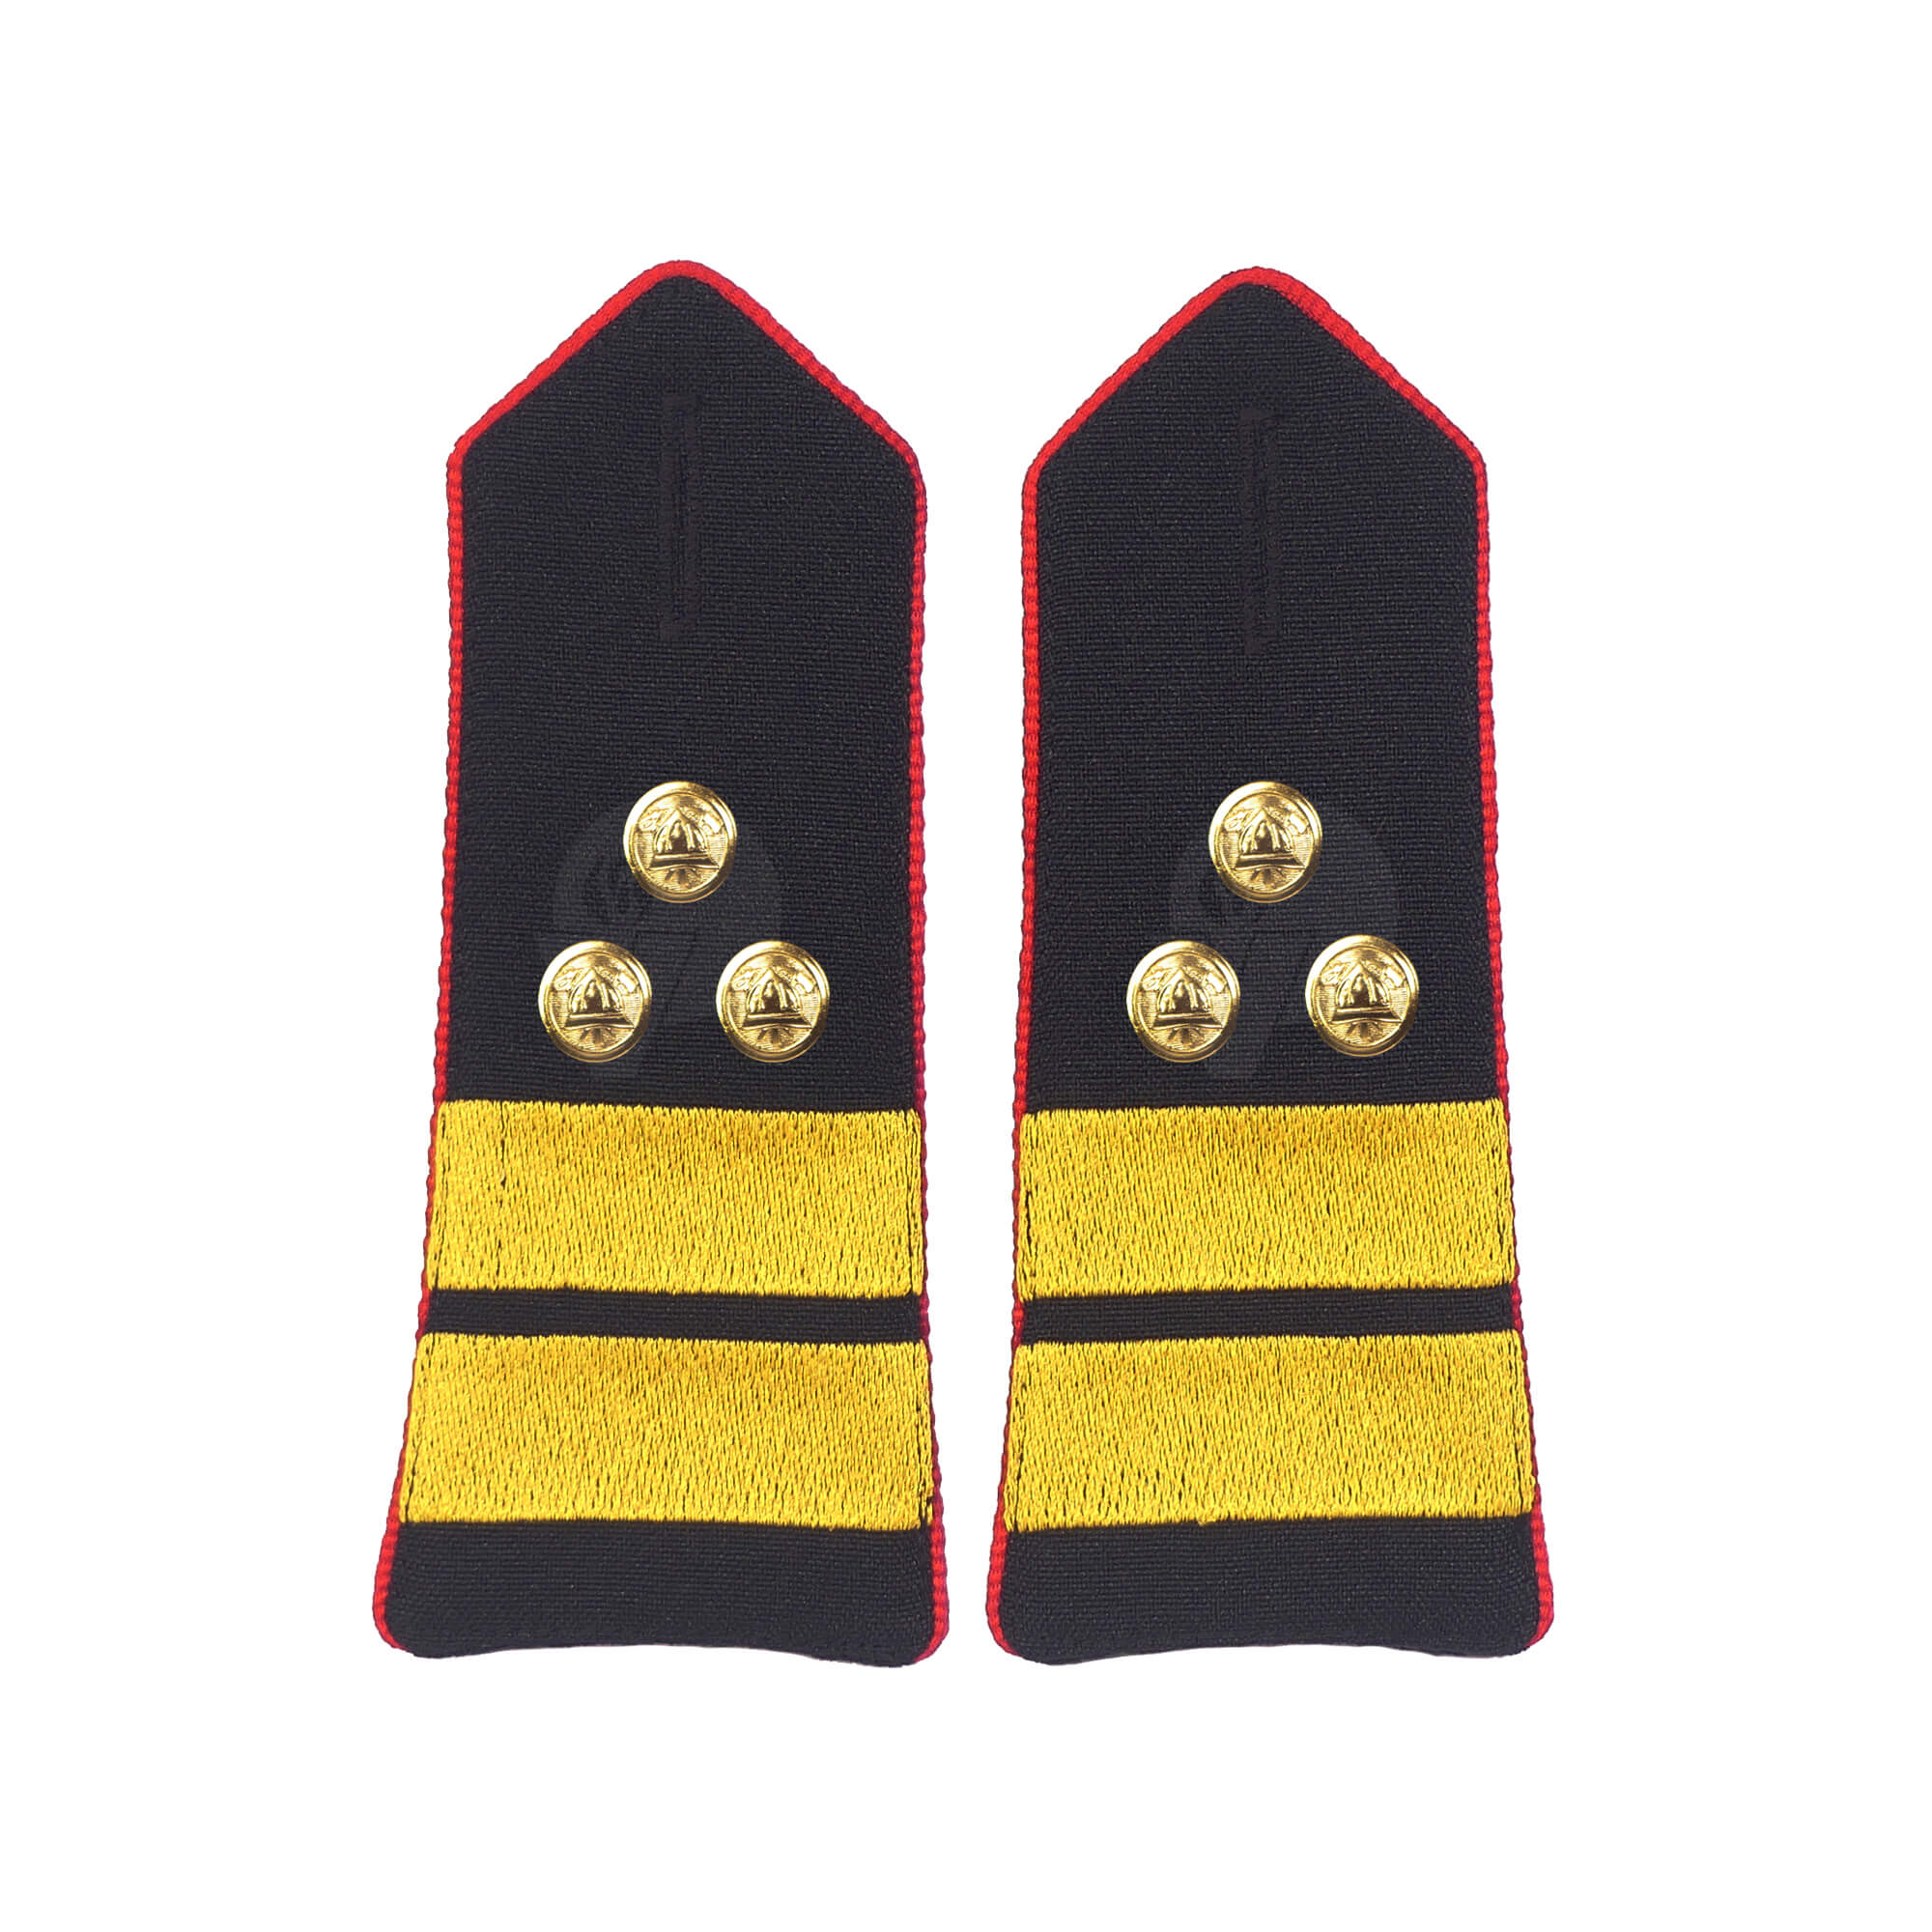 Vatrogasne oznake zvanja za profesionalce, Viši vatrogasni časnik prve klase